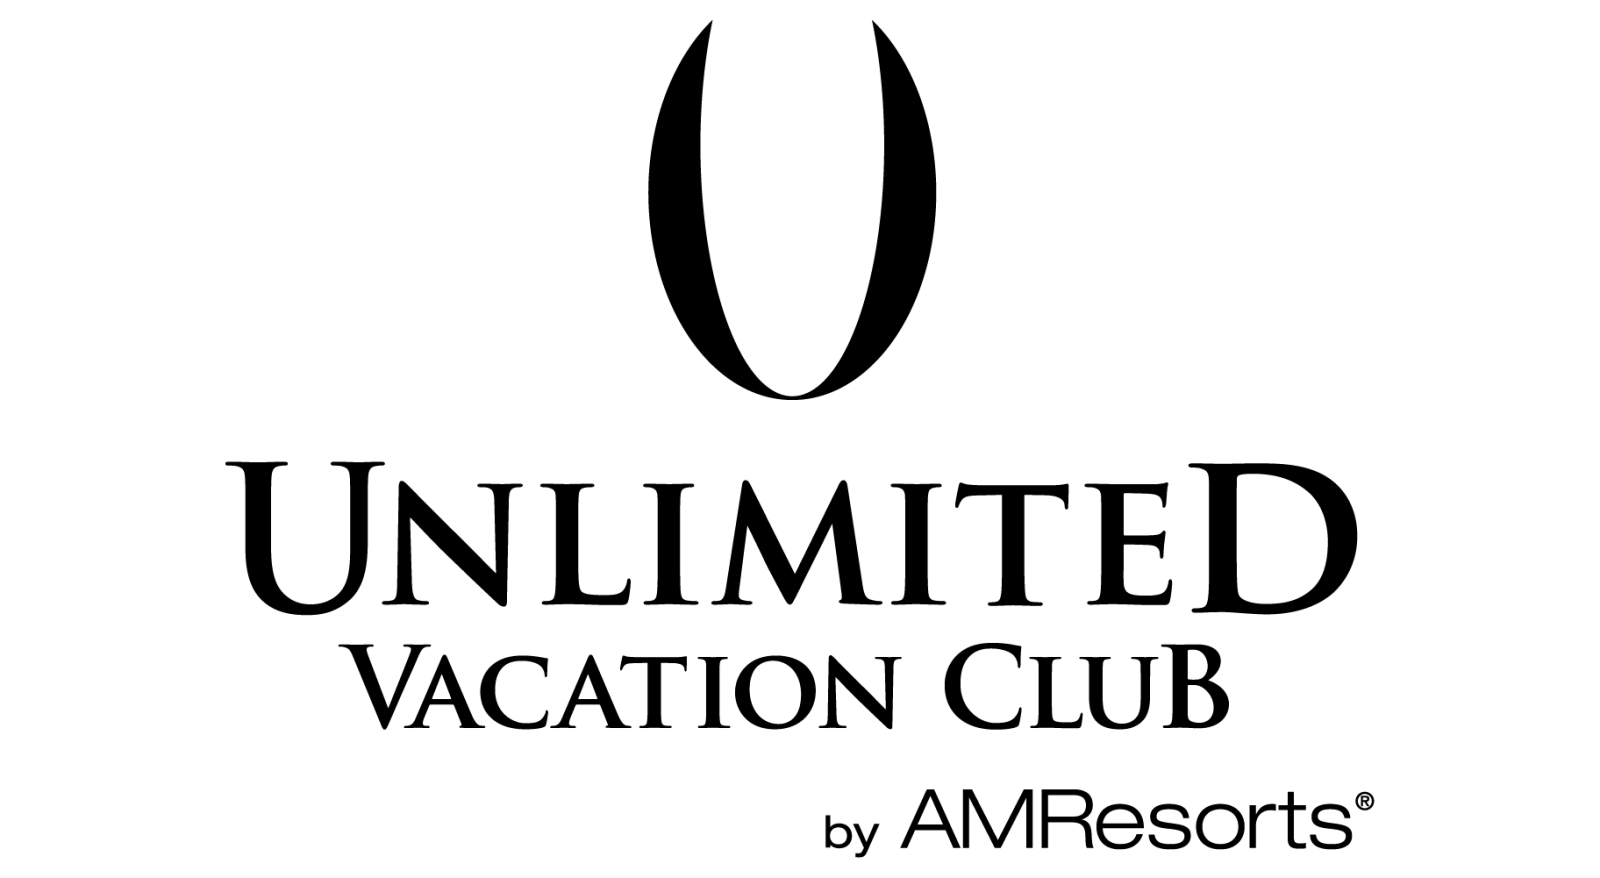 Actualizar 42+ imagen unlimited vacation club - Expoproveedorindustrial.mx